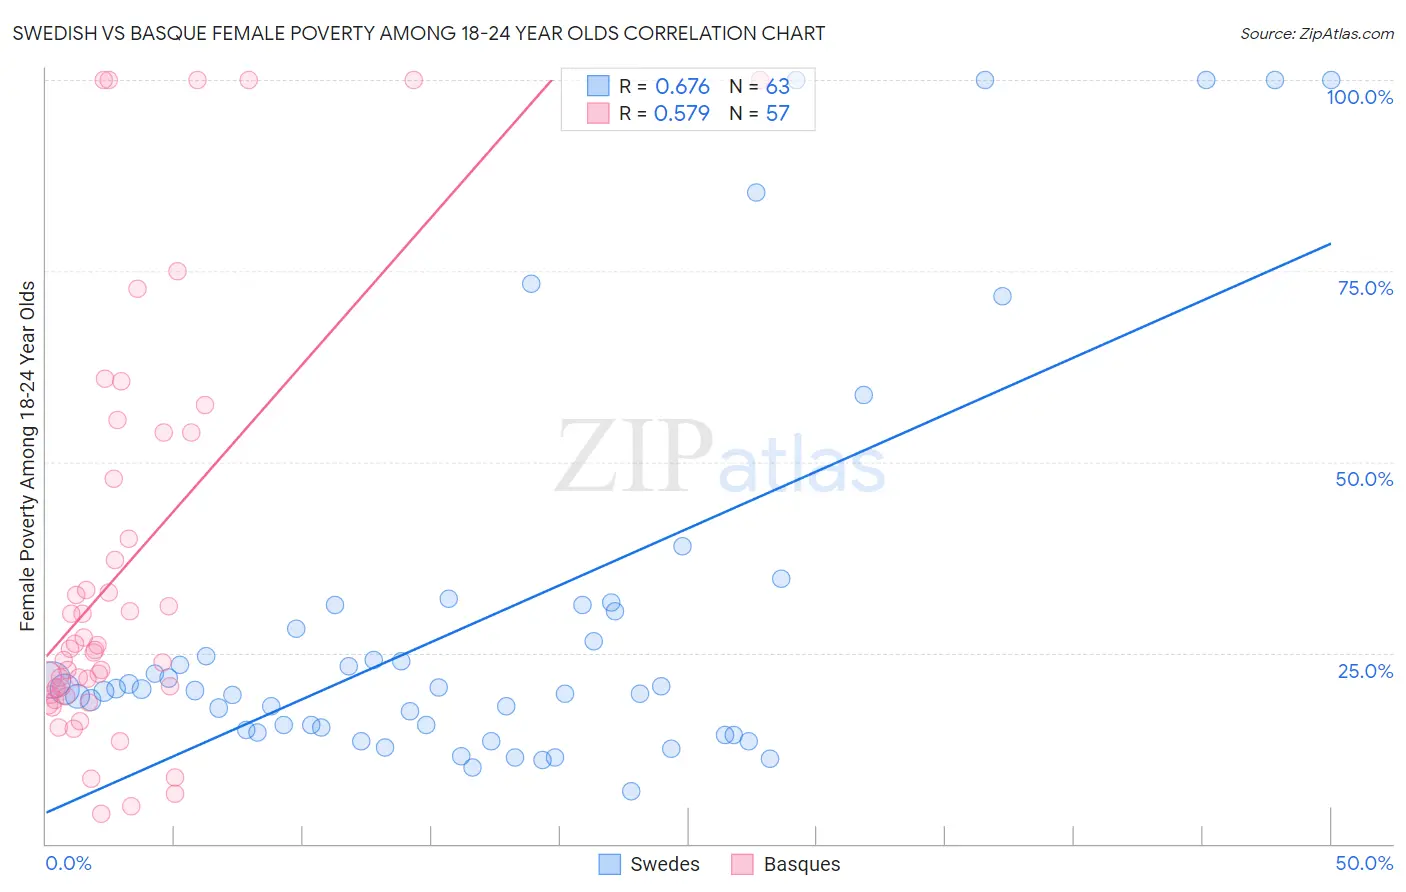 Swedish vs Basque Female Poverty Among 18-24 Year Olds